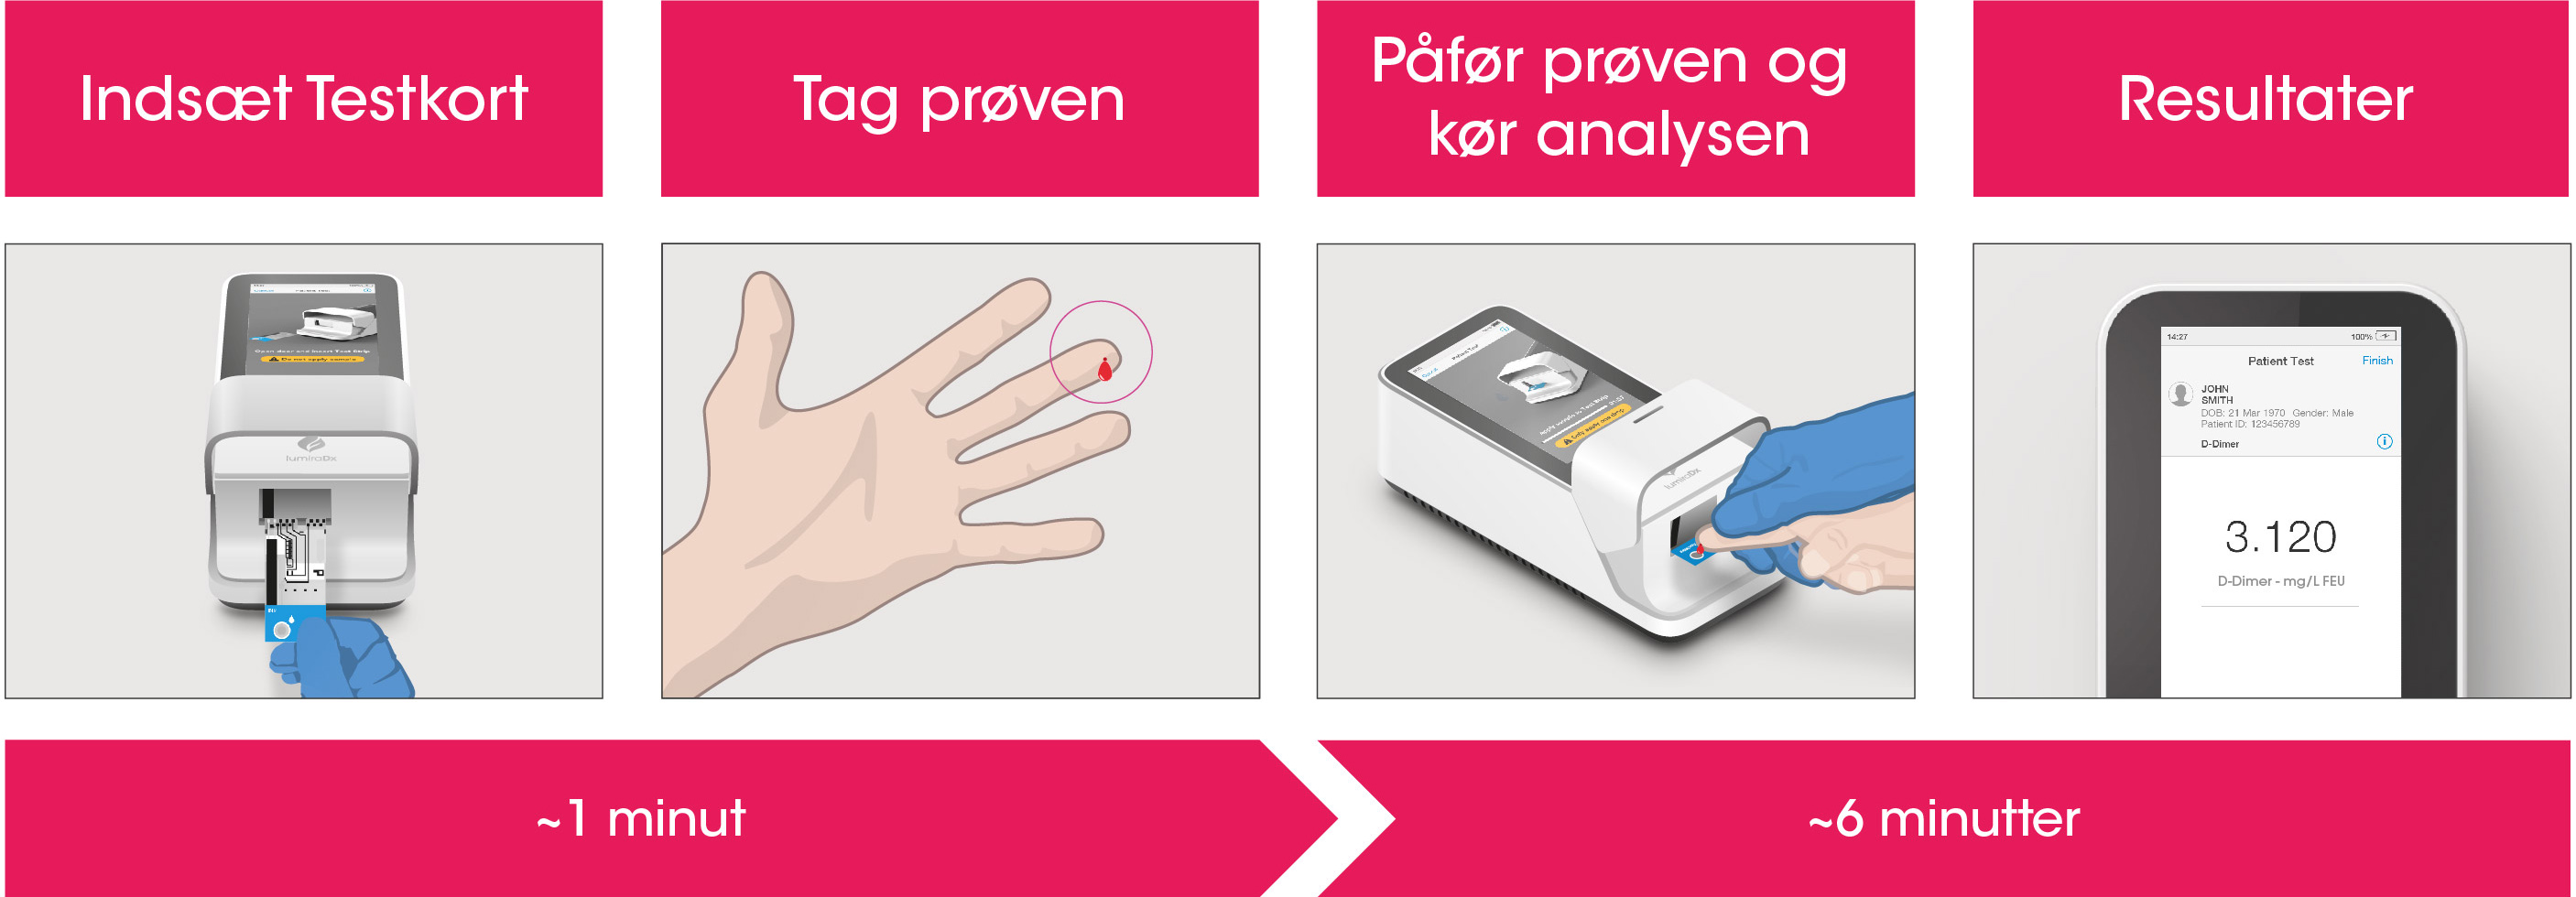 Arbejdsgangsprocessen for D-Dimer Test består af en simpel prøvetagning med en fingerpriklancet efterfulgt af trinvis vejledning af Instrumentet til at rapportere et patientresultat efter 6 minutter fra prøveplacering.